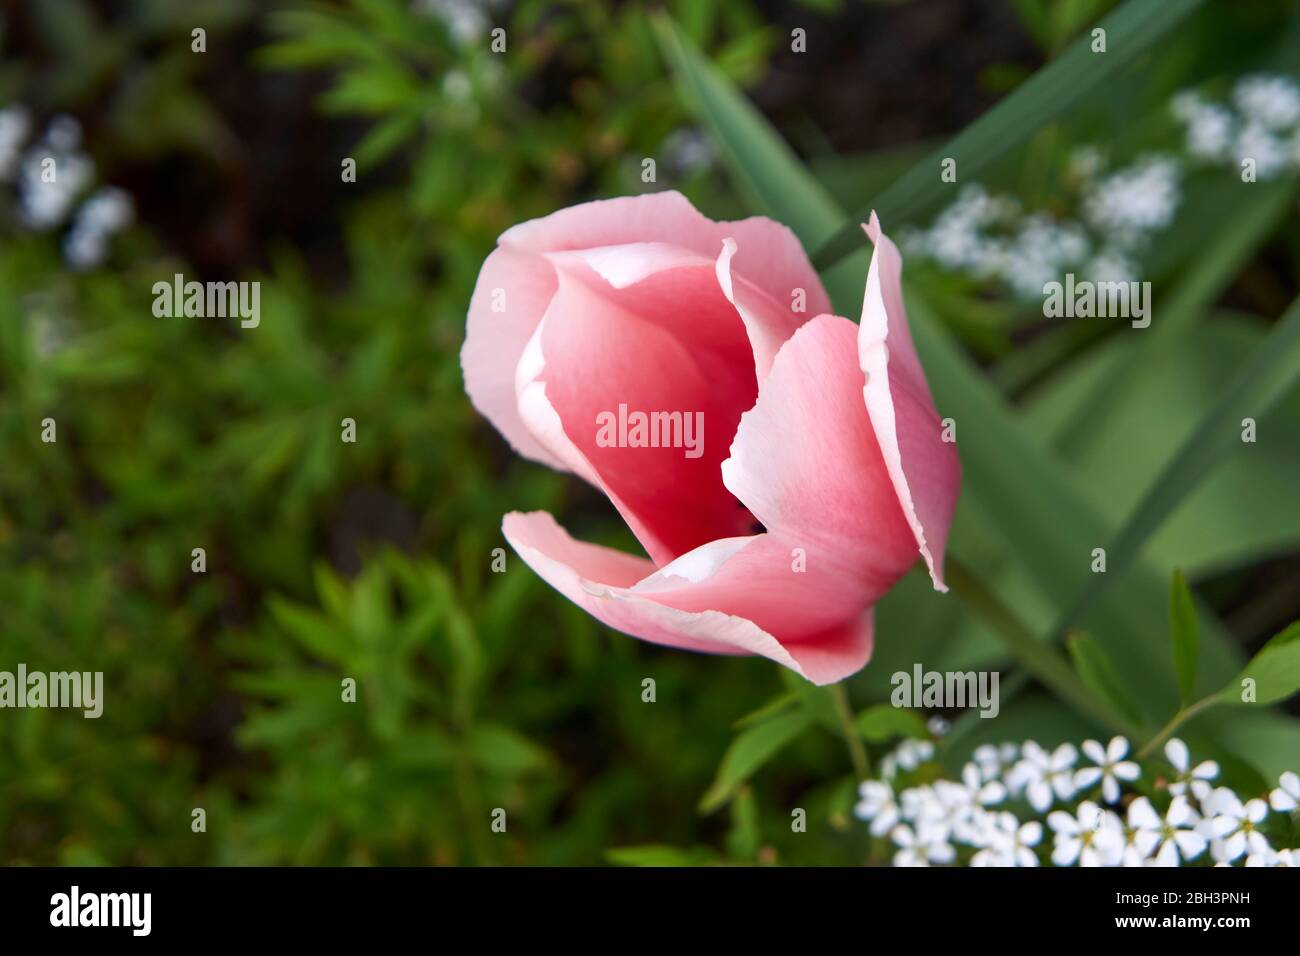 Primer plano de los pétalos de una flor de tulipanes rosados que florece en primavera, Vancouver, British Columbia, Canadá Foto de stock